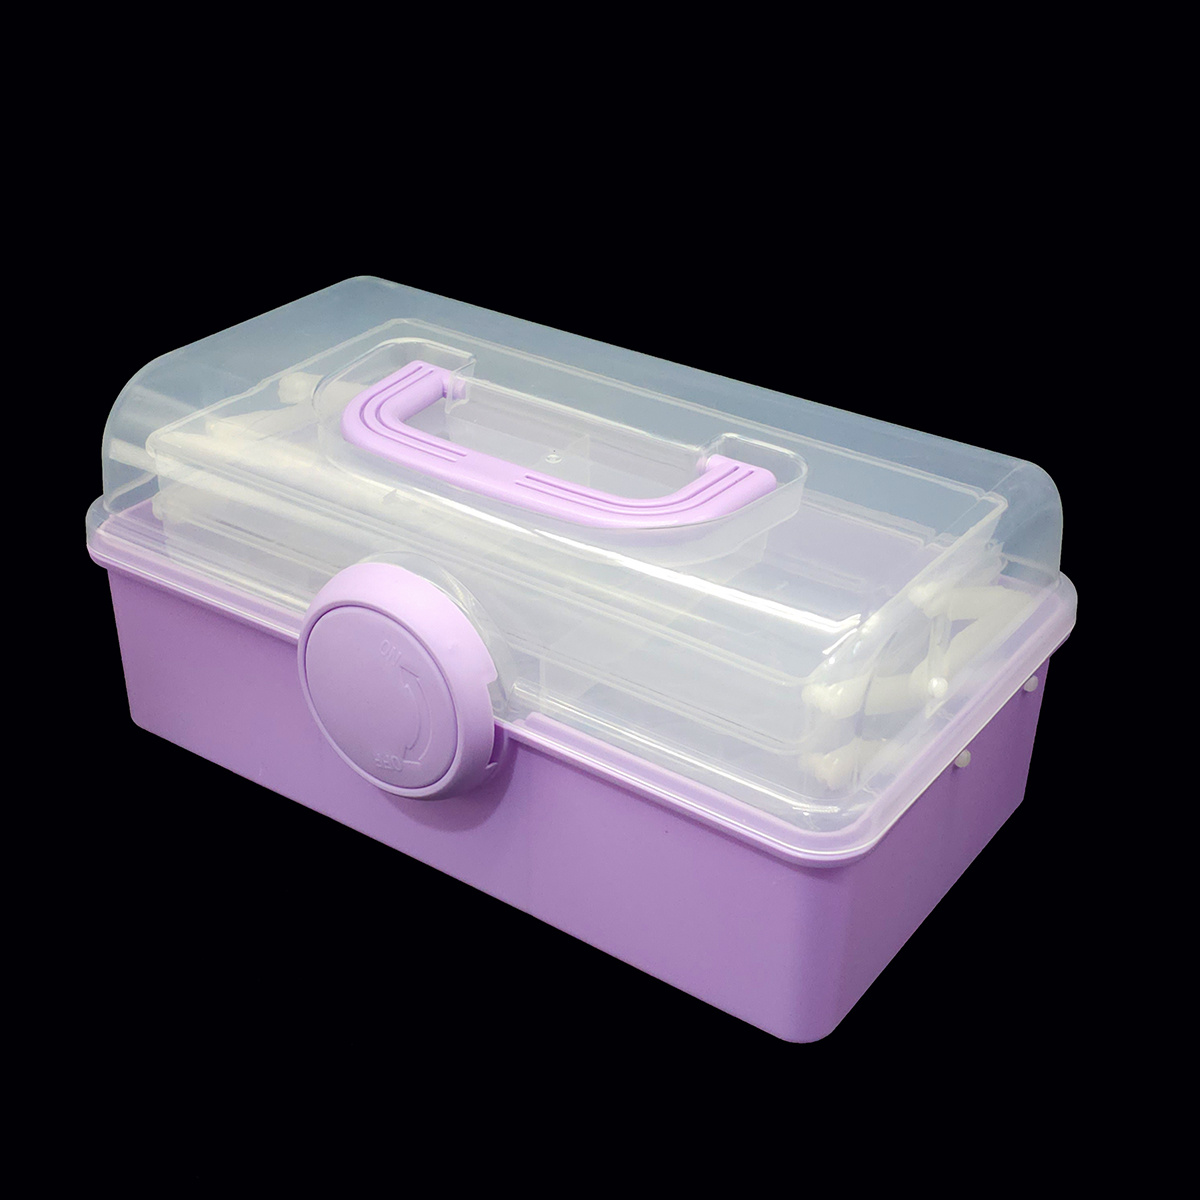 57 Purple Diamond Painting Tool Set With Storage Box, DIY Diamond